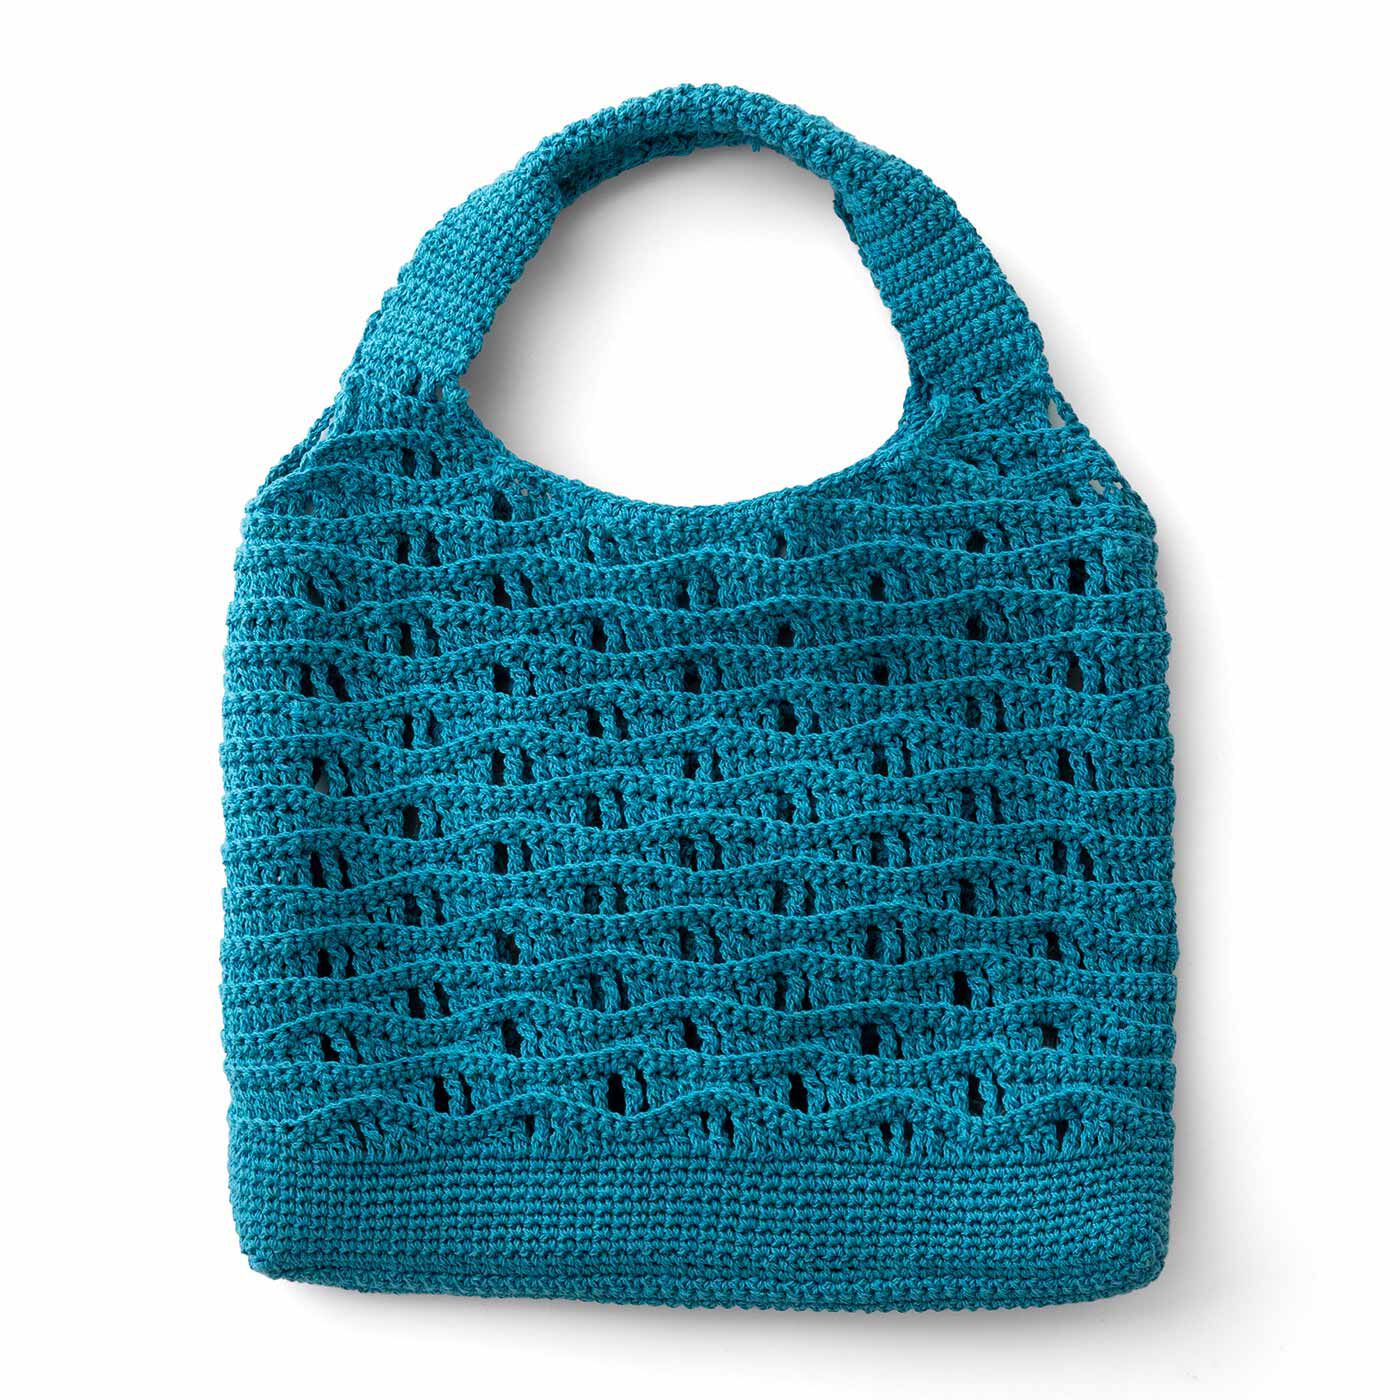 クチュリエ|涼しげな編み地が自慢 透け感がおしゃれなかぎ針編みバッグの会|ターコイズブルーの波模様バッグ